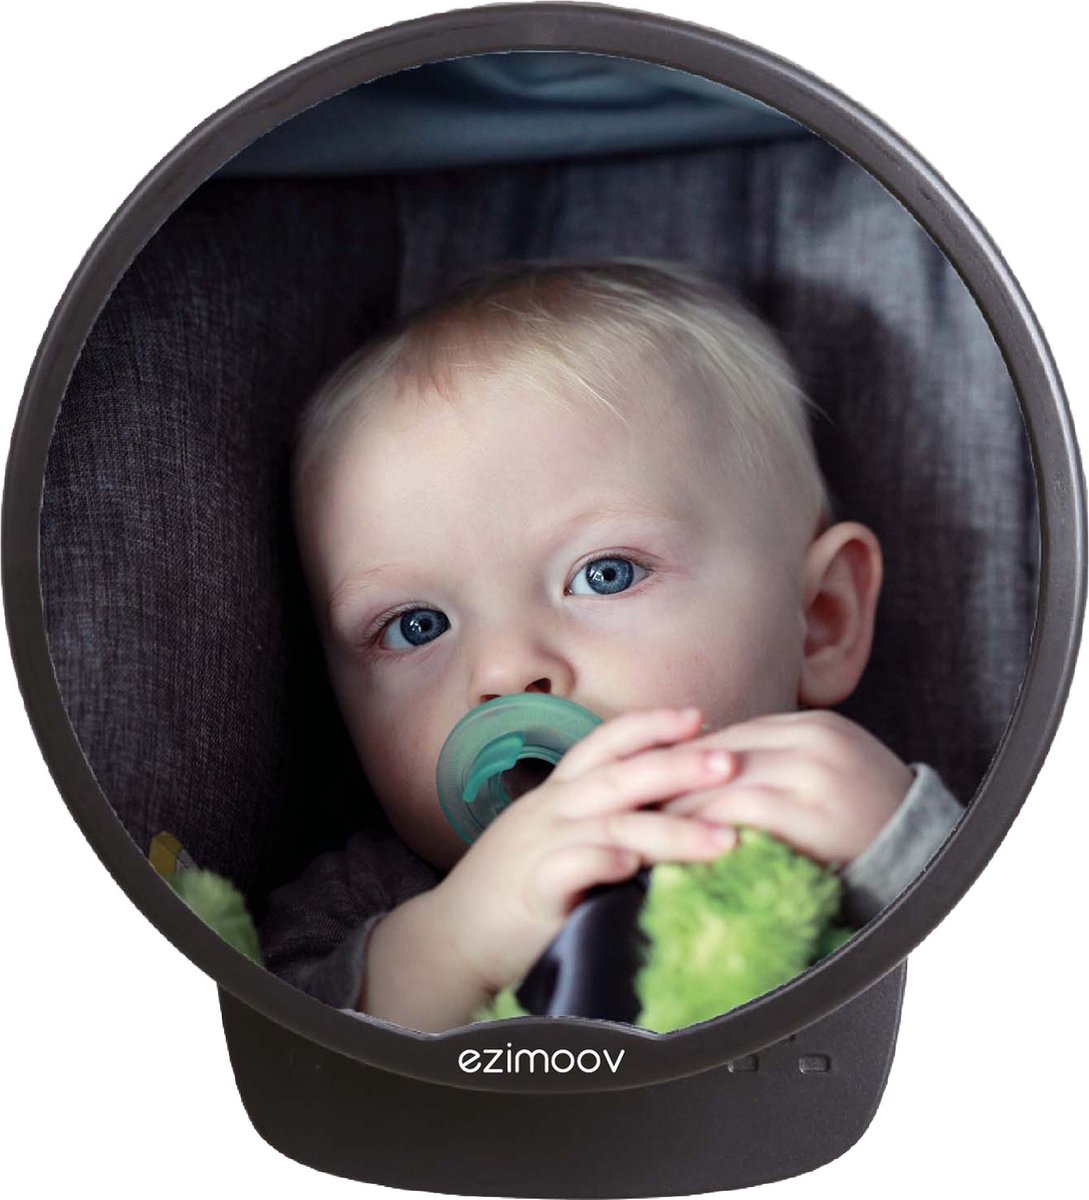 EZI MIRROR ROUND - Eco friendly - Mooie ronde - Auto spiegel baby - achterbank - kind zien - verstelbaar - duurzaam